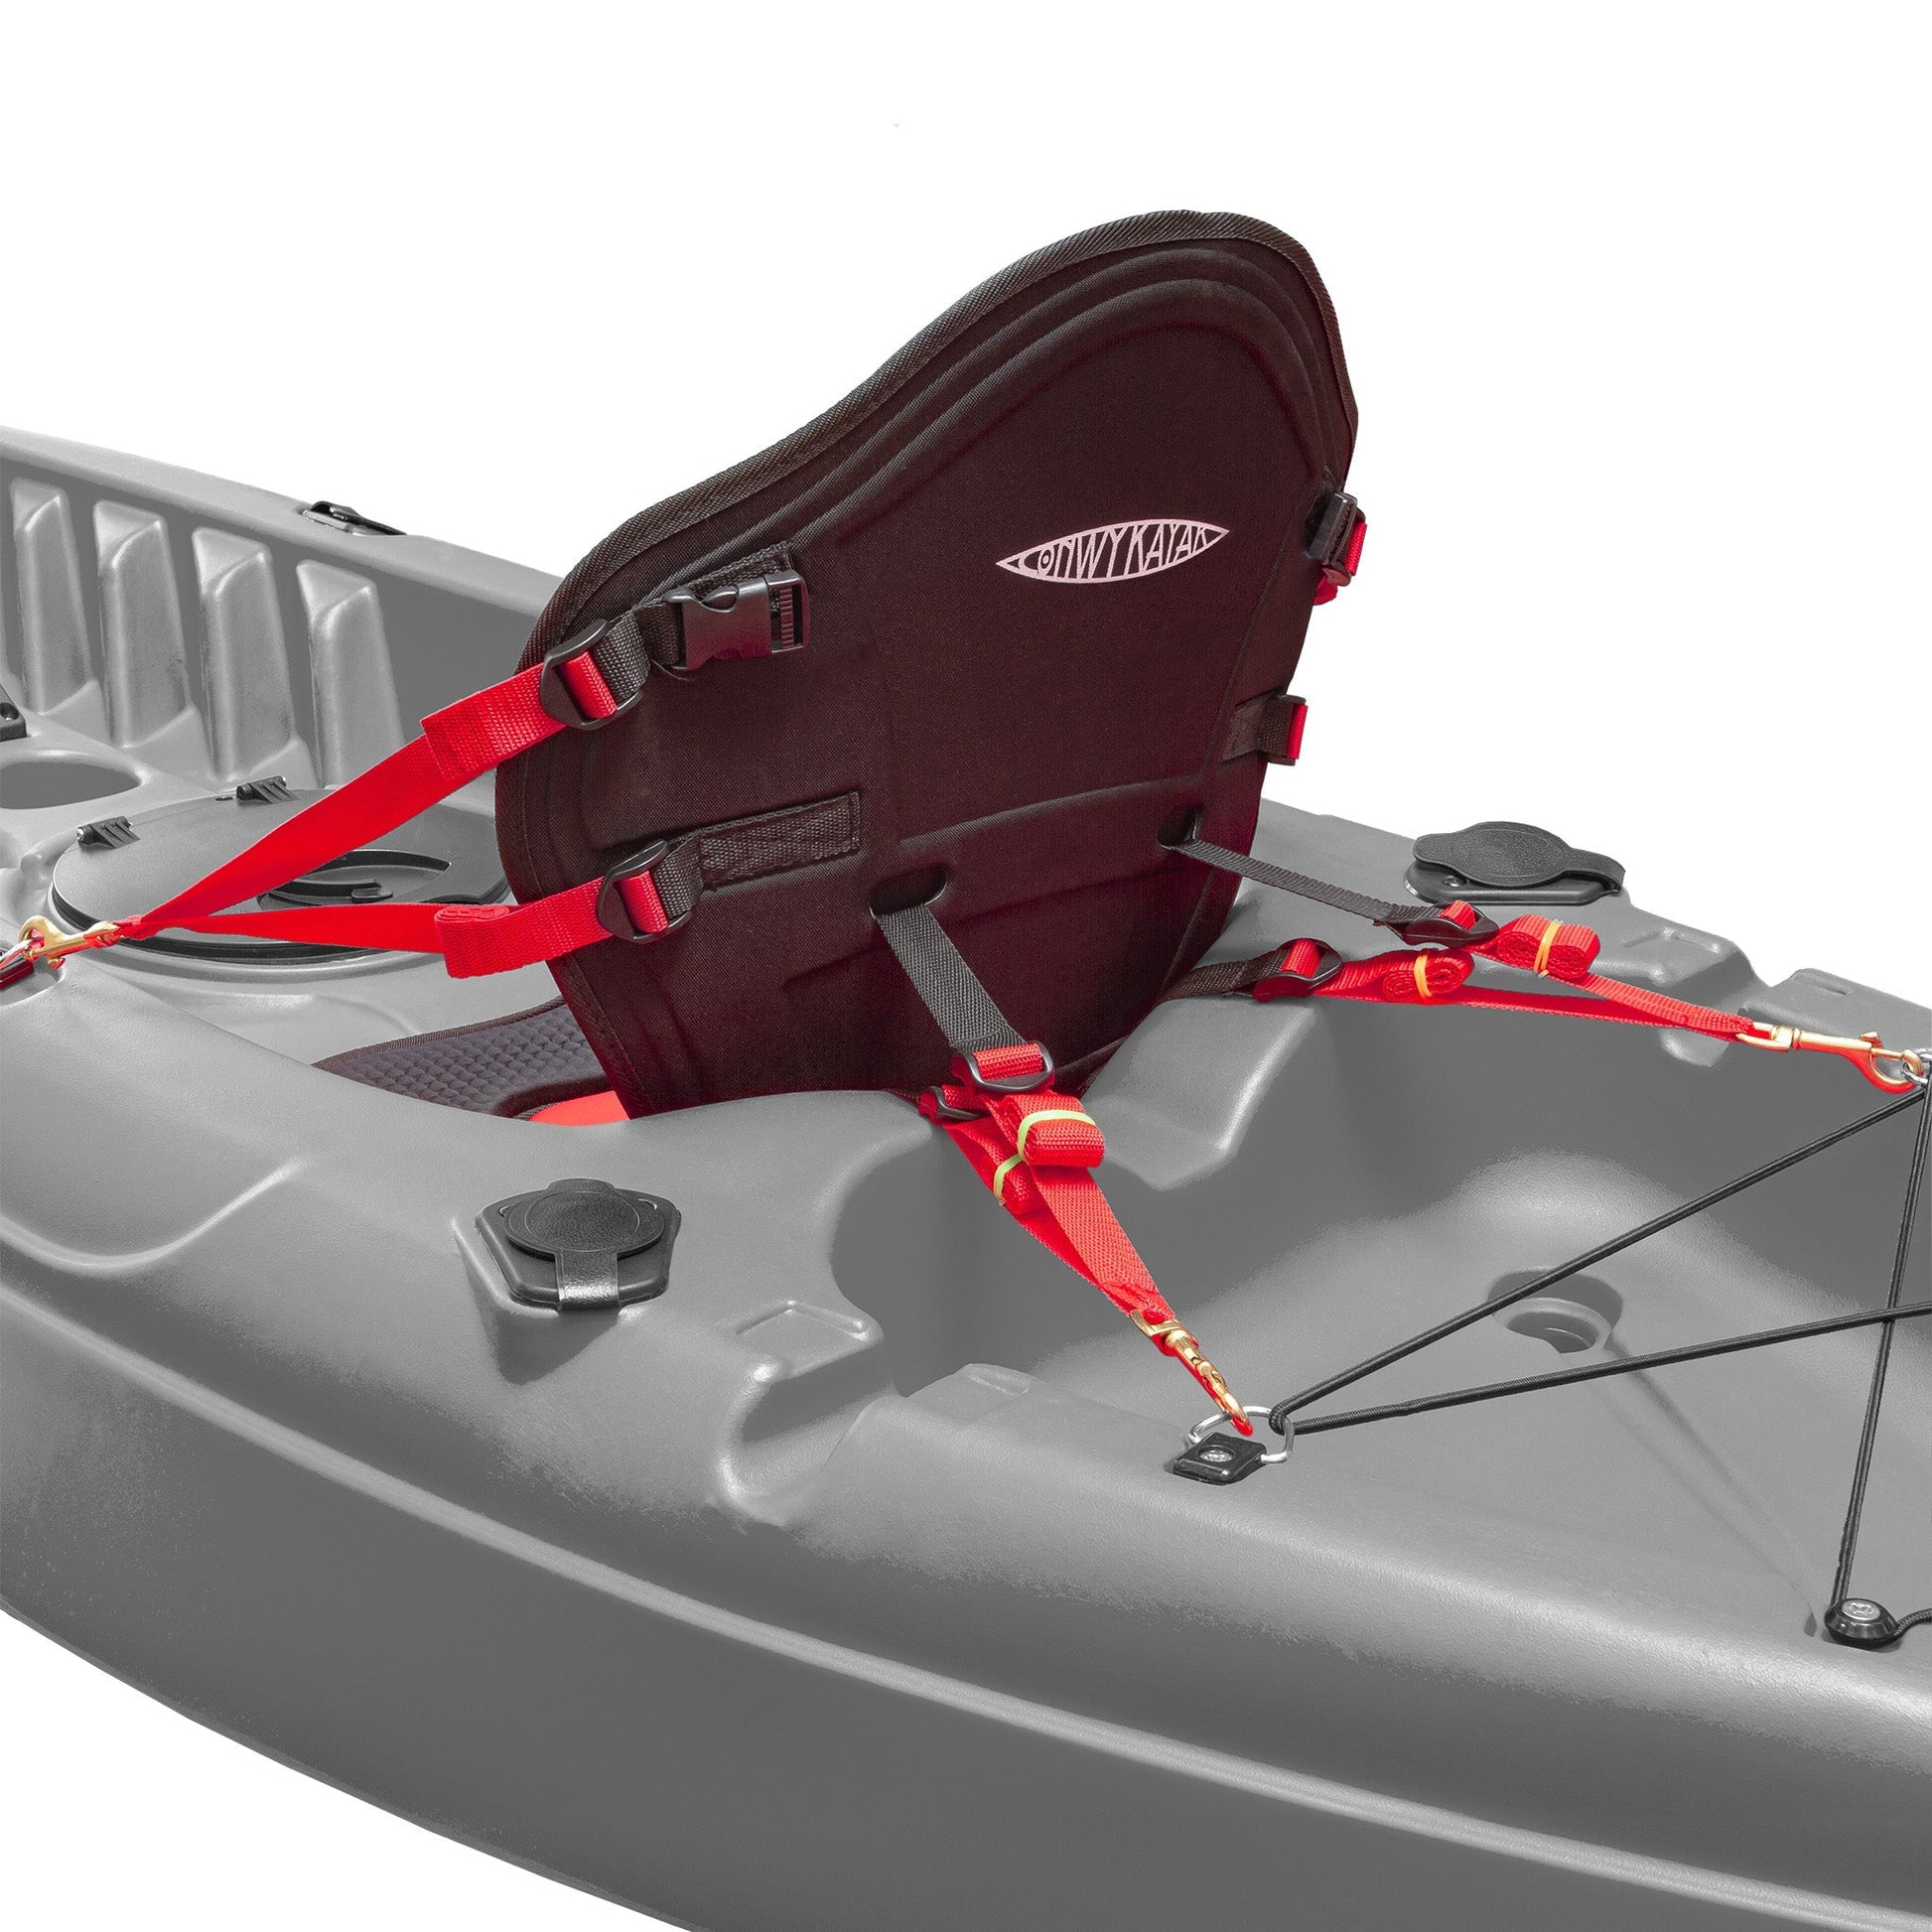 Conwy Kayak - High Performance Adjustable Kayak Seat - 8